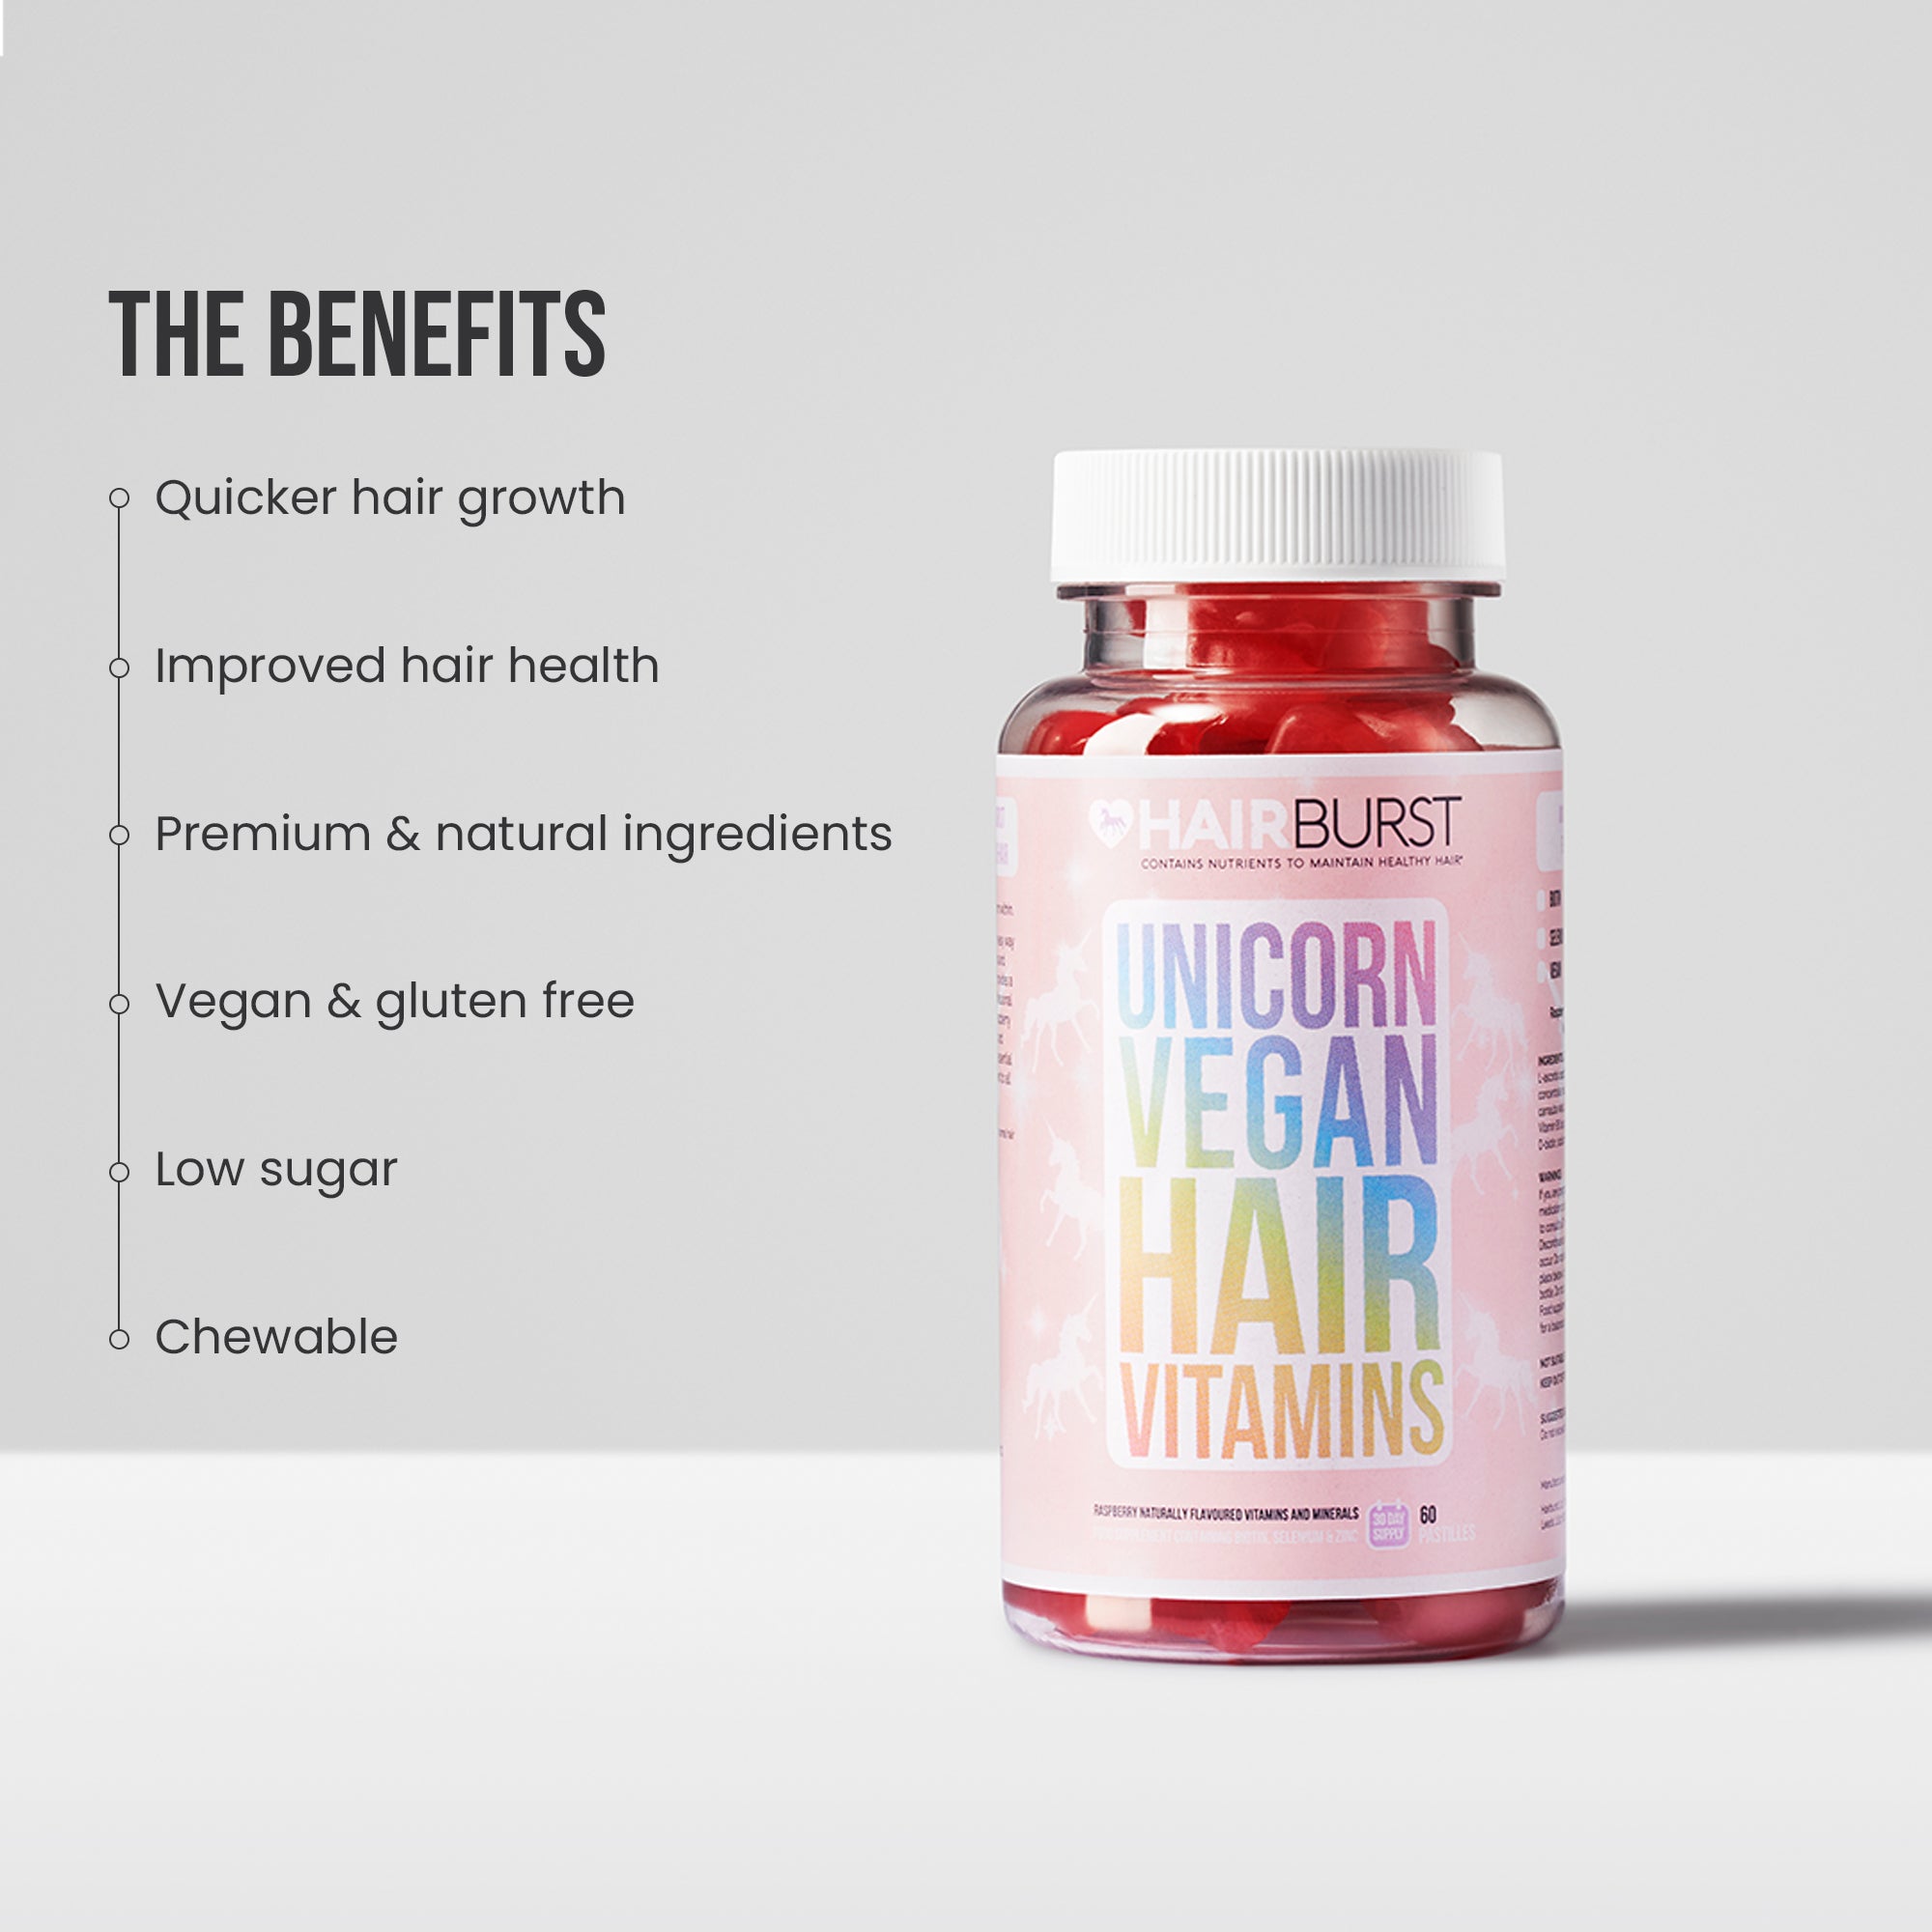 Unicorn Vegan Hair Vitamins